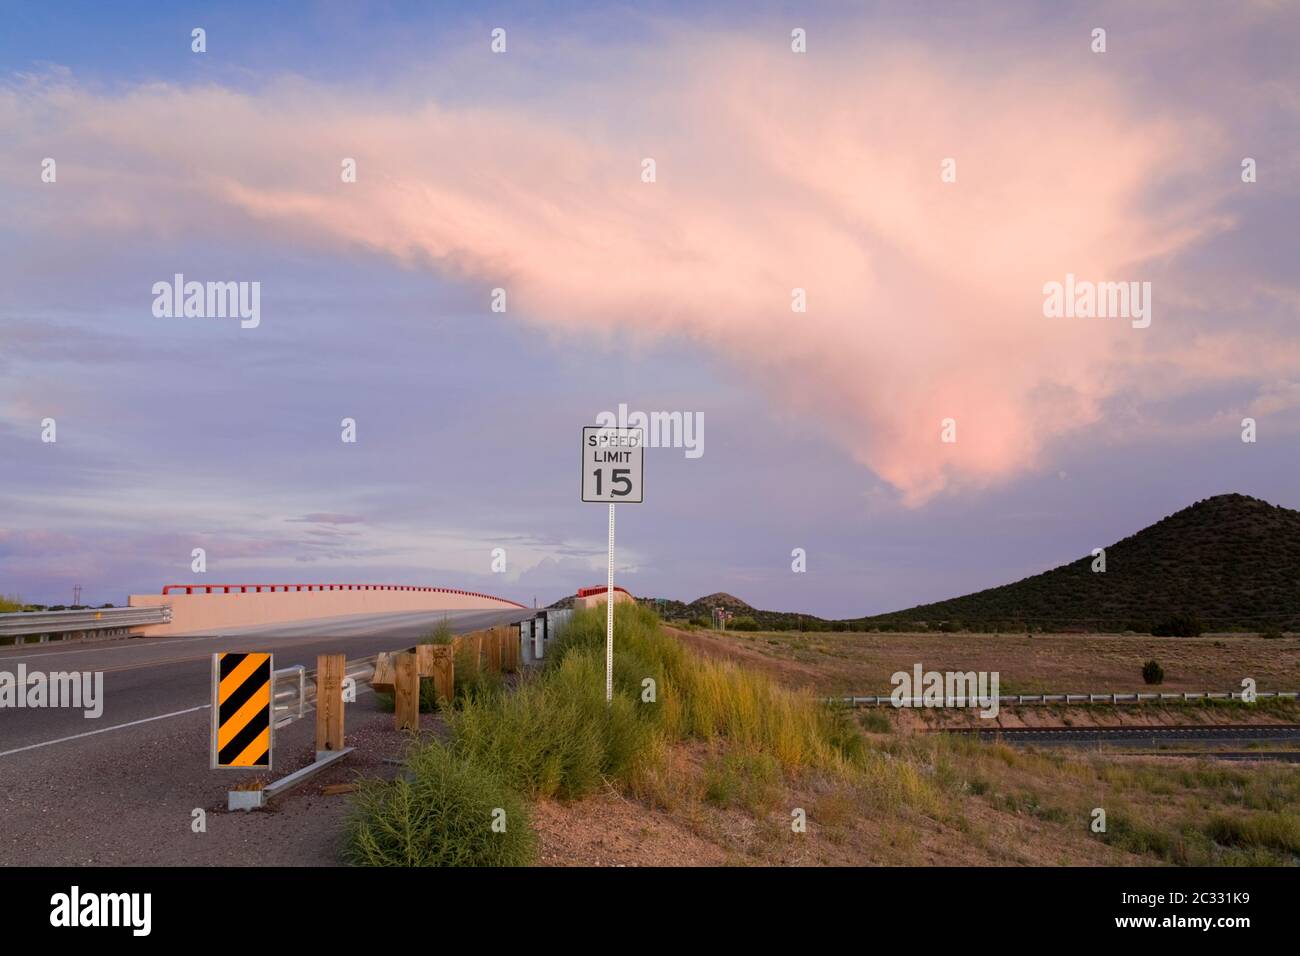 Pont sur l'Interstate 25 près de Santa Fe, Nouveau-Mexique, États-Unis Banque D'Images